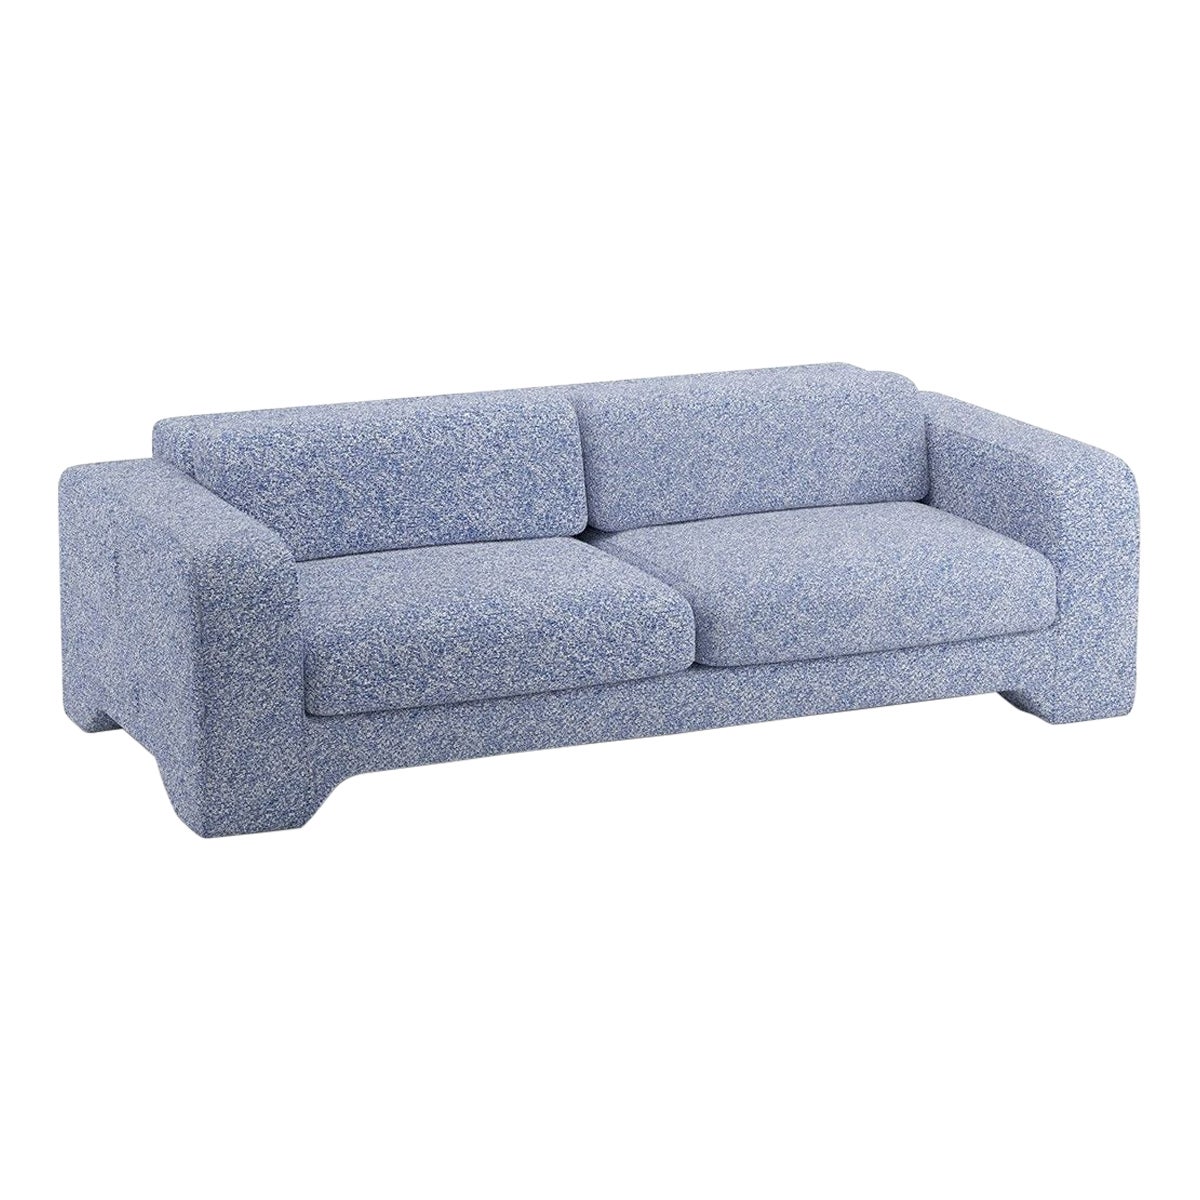 Popus Editions Giovanna 4 Seater Sofa in Ocean Zanzi Linen Fabric For Sale